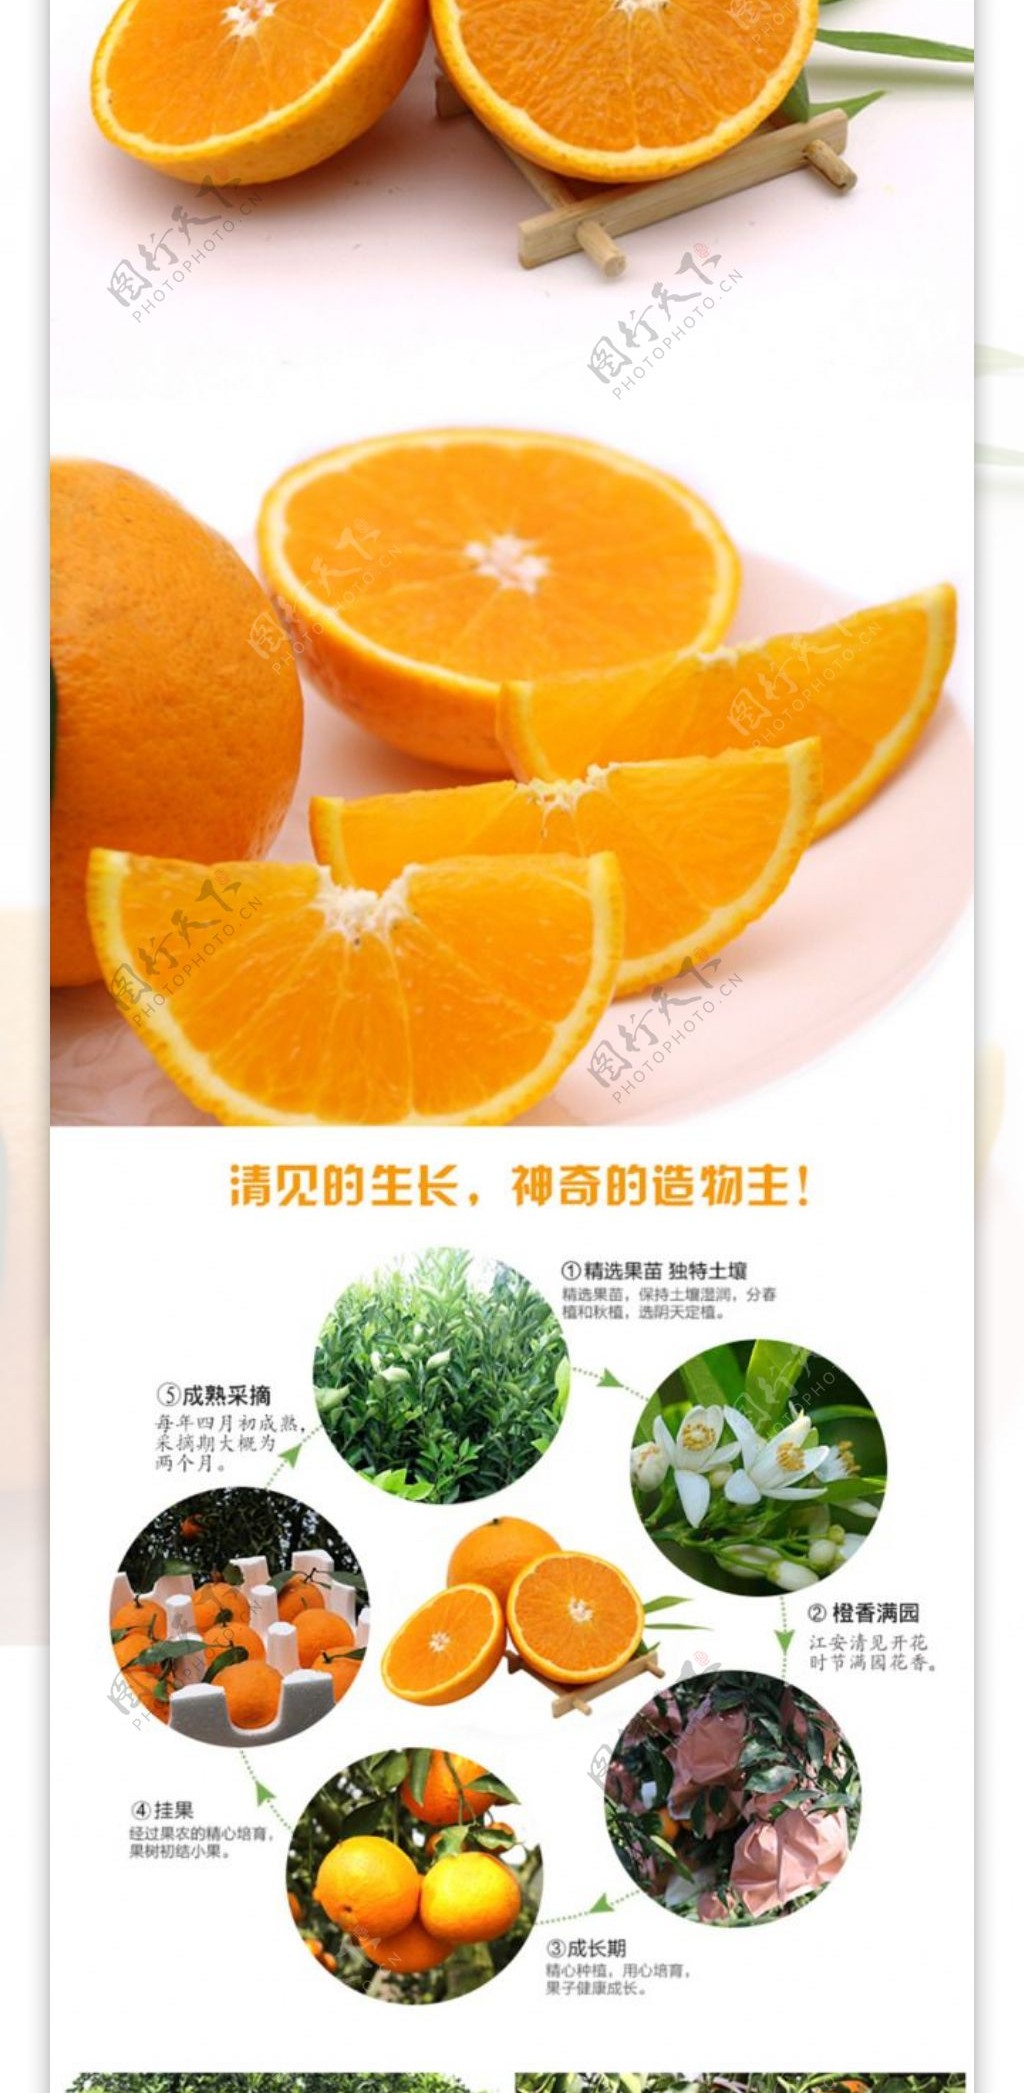 清见详情页柑橘